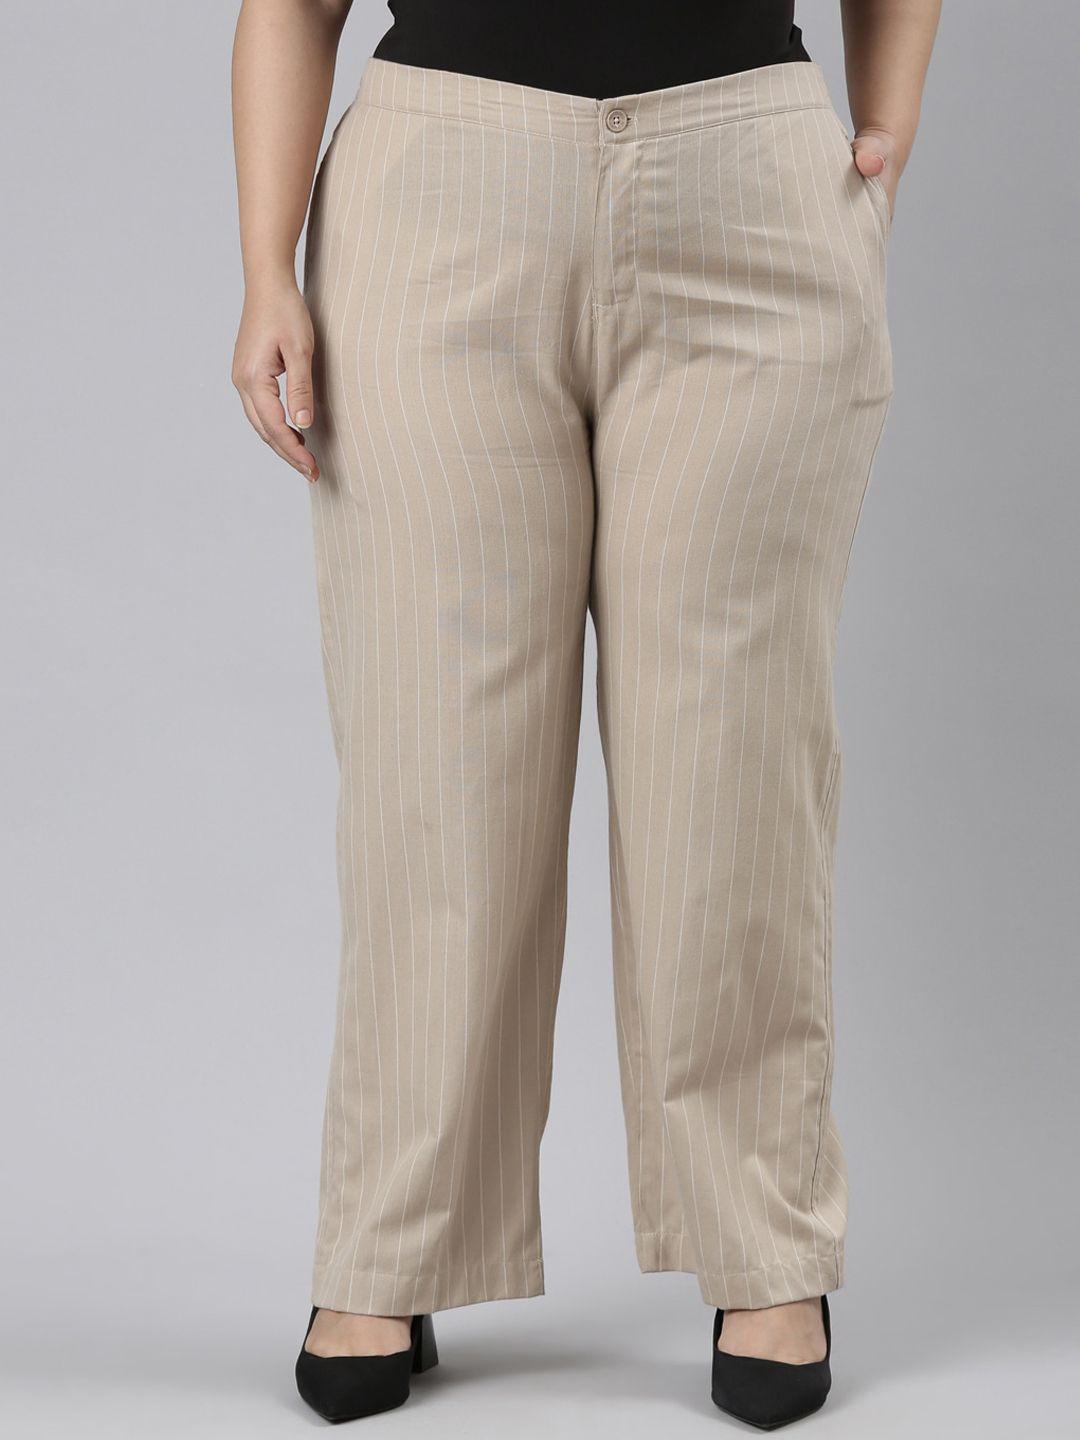 go colors women plus size striped cotton parallel trousers